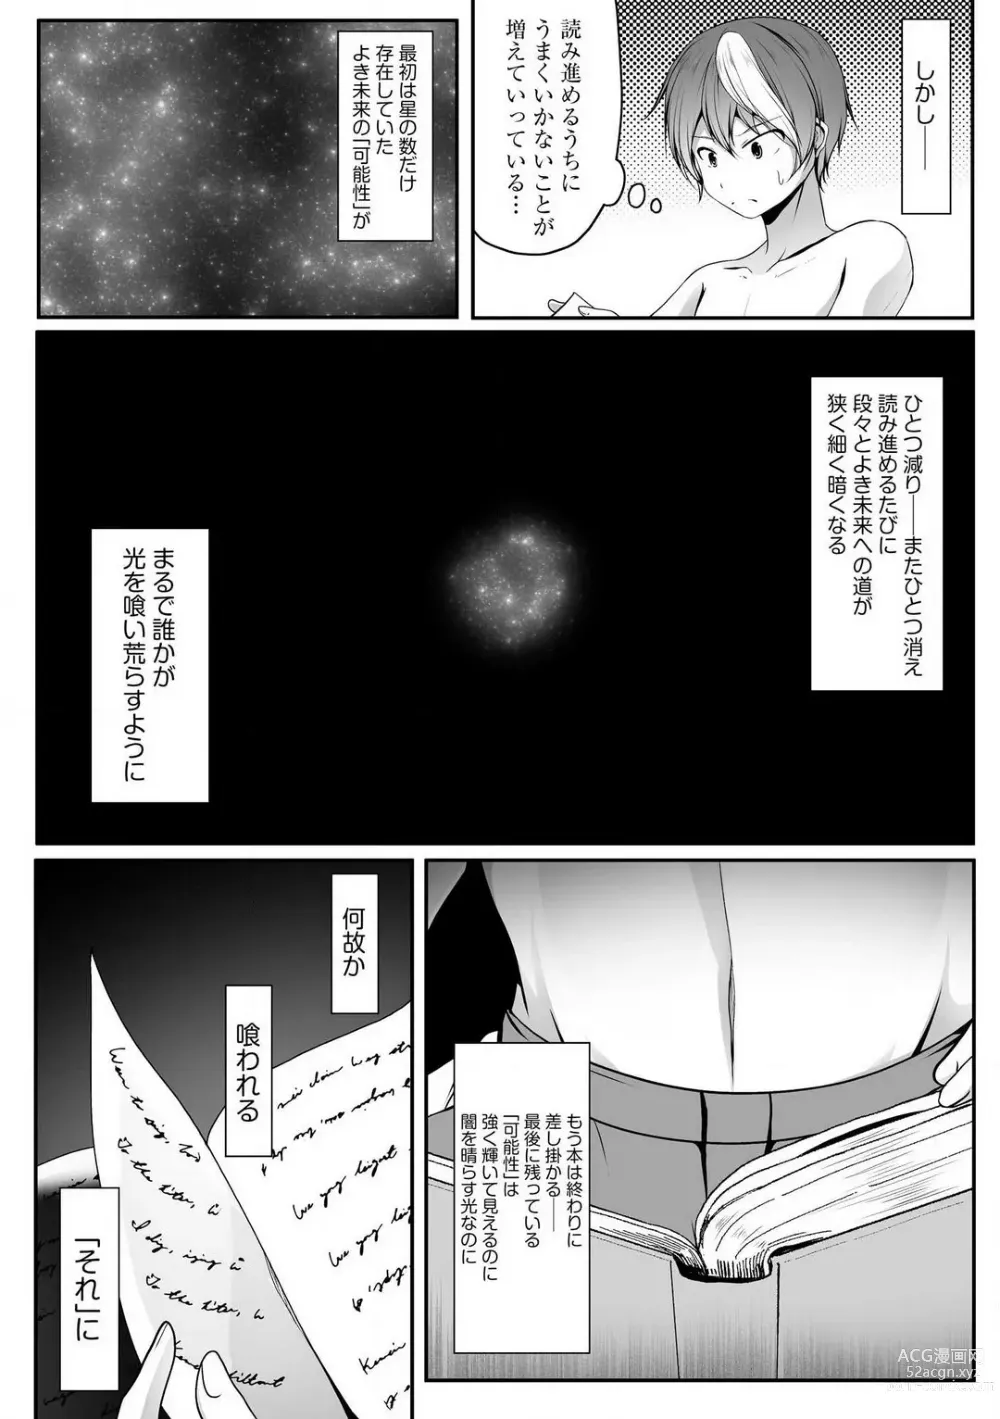 Page 340 of manga Cheat Skill Shihai